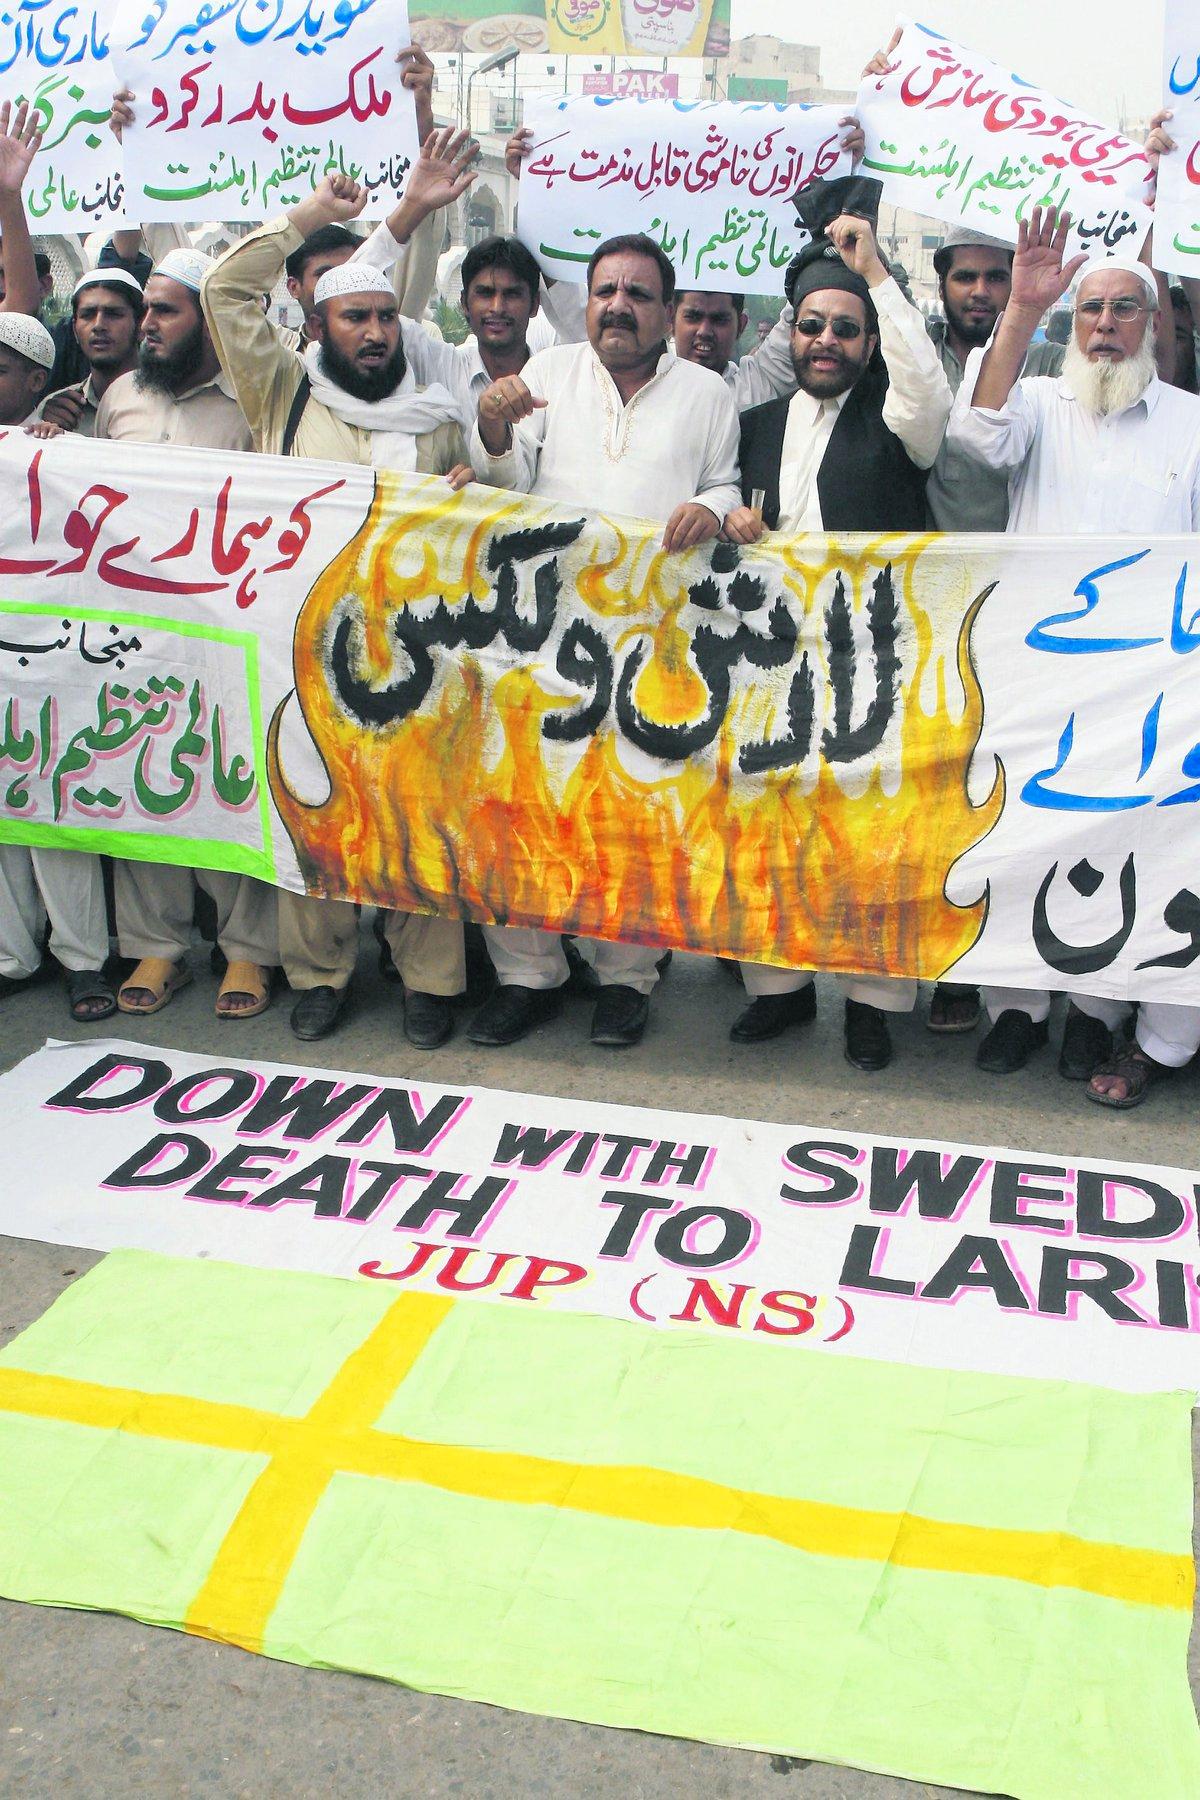 PROTESTERAR MOT SVERIGE Vid en protest i Pakistan hösten 2007 håller demonstranterna upp en svensk flagga med Lars Vilks namn och fördömer hans karikatyr av Muhammed.